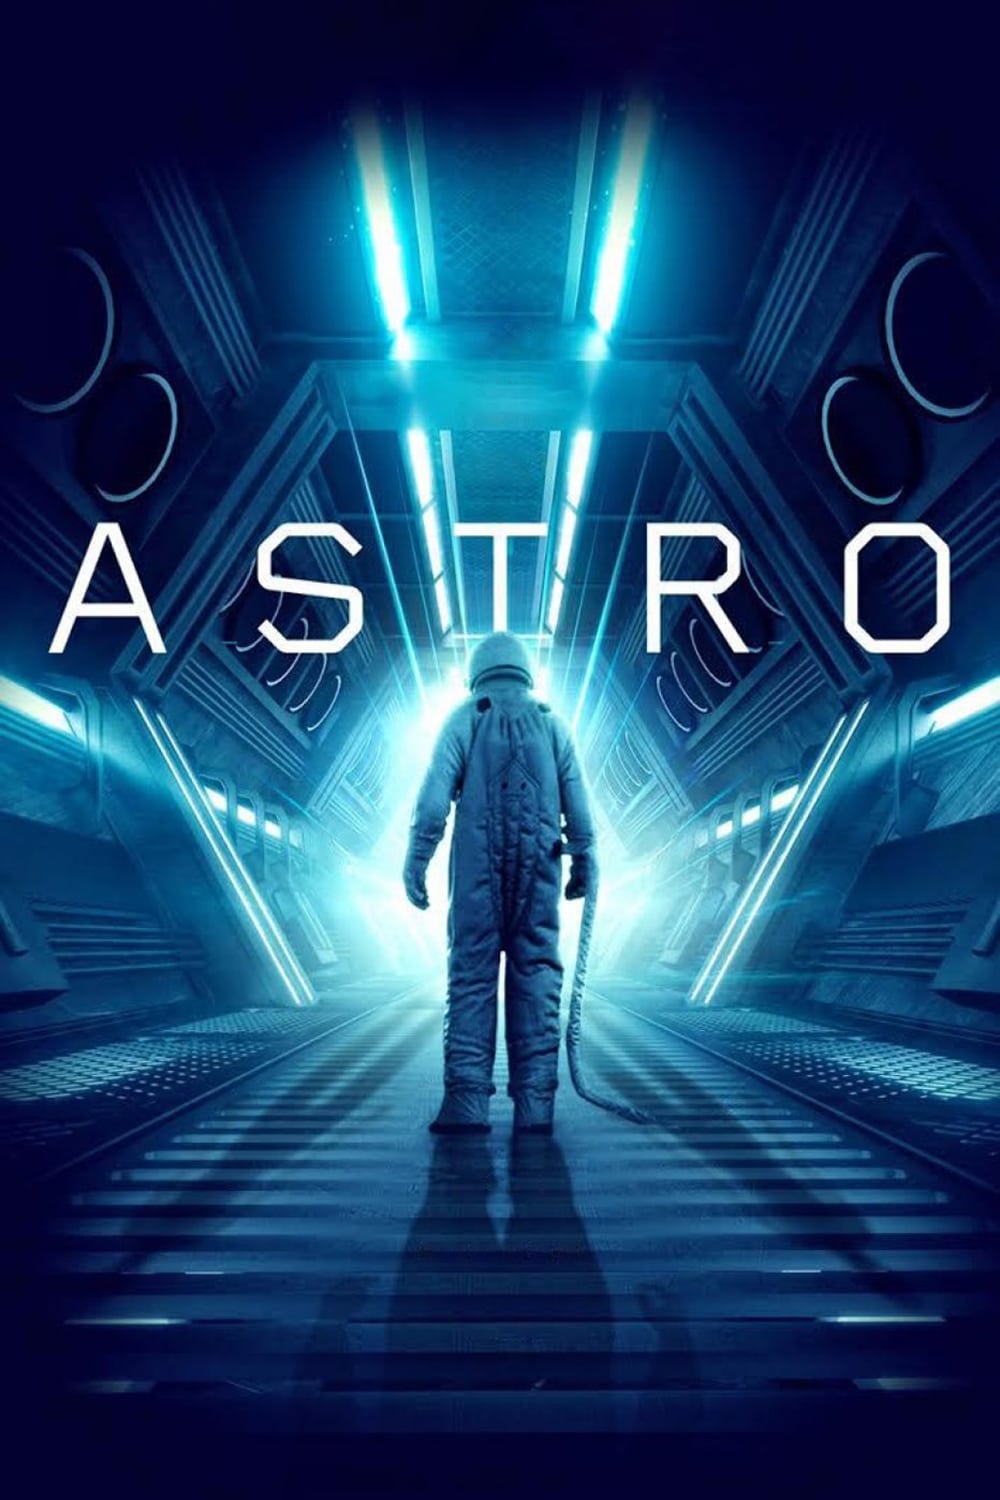 Astro film